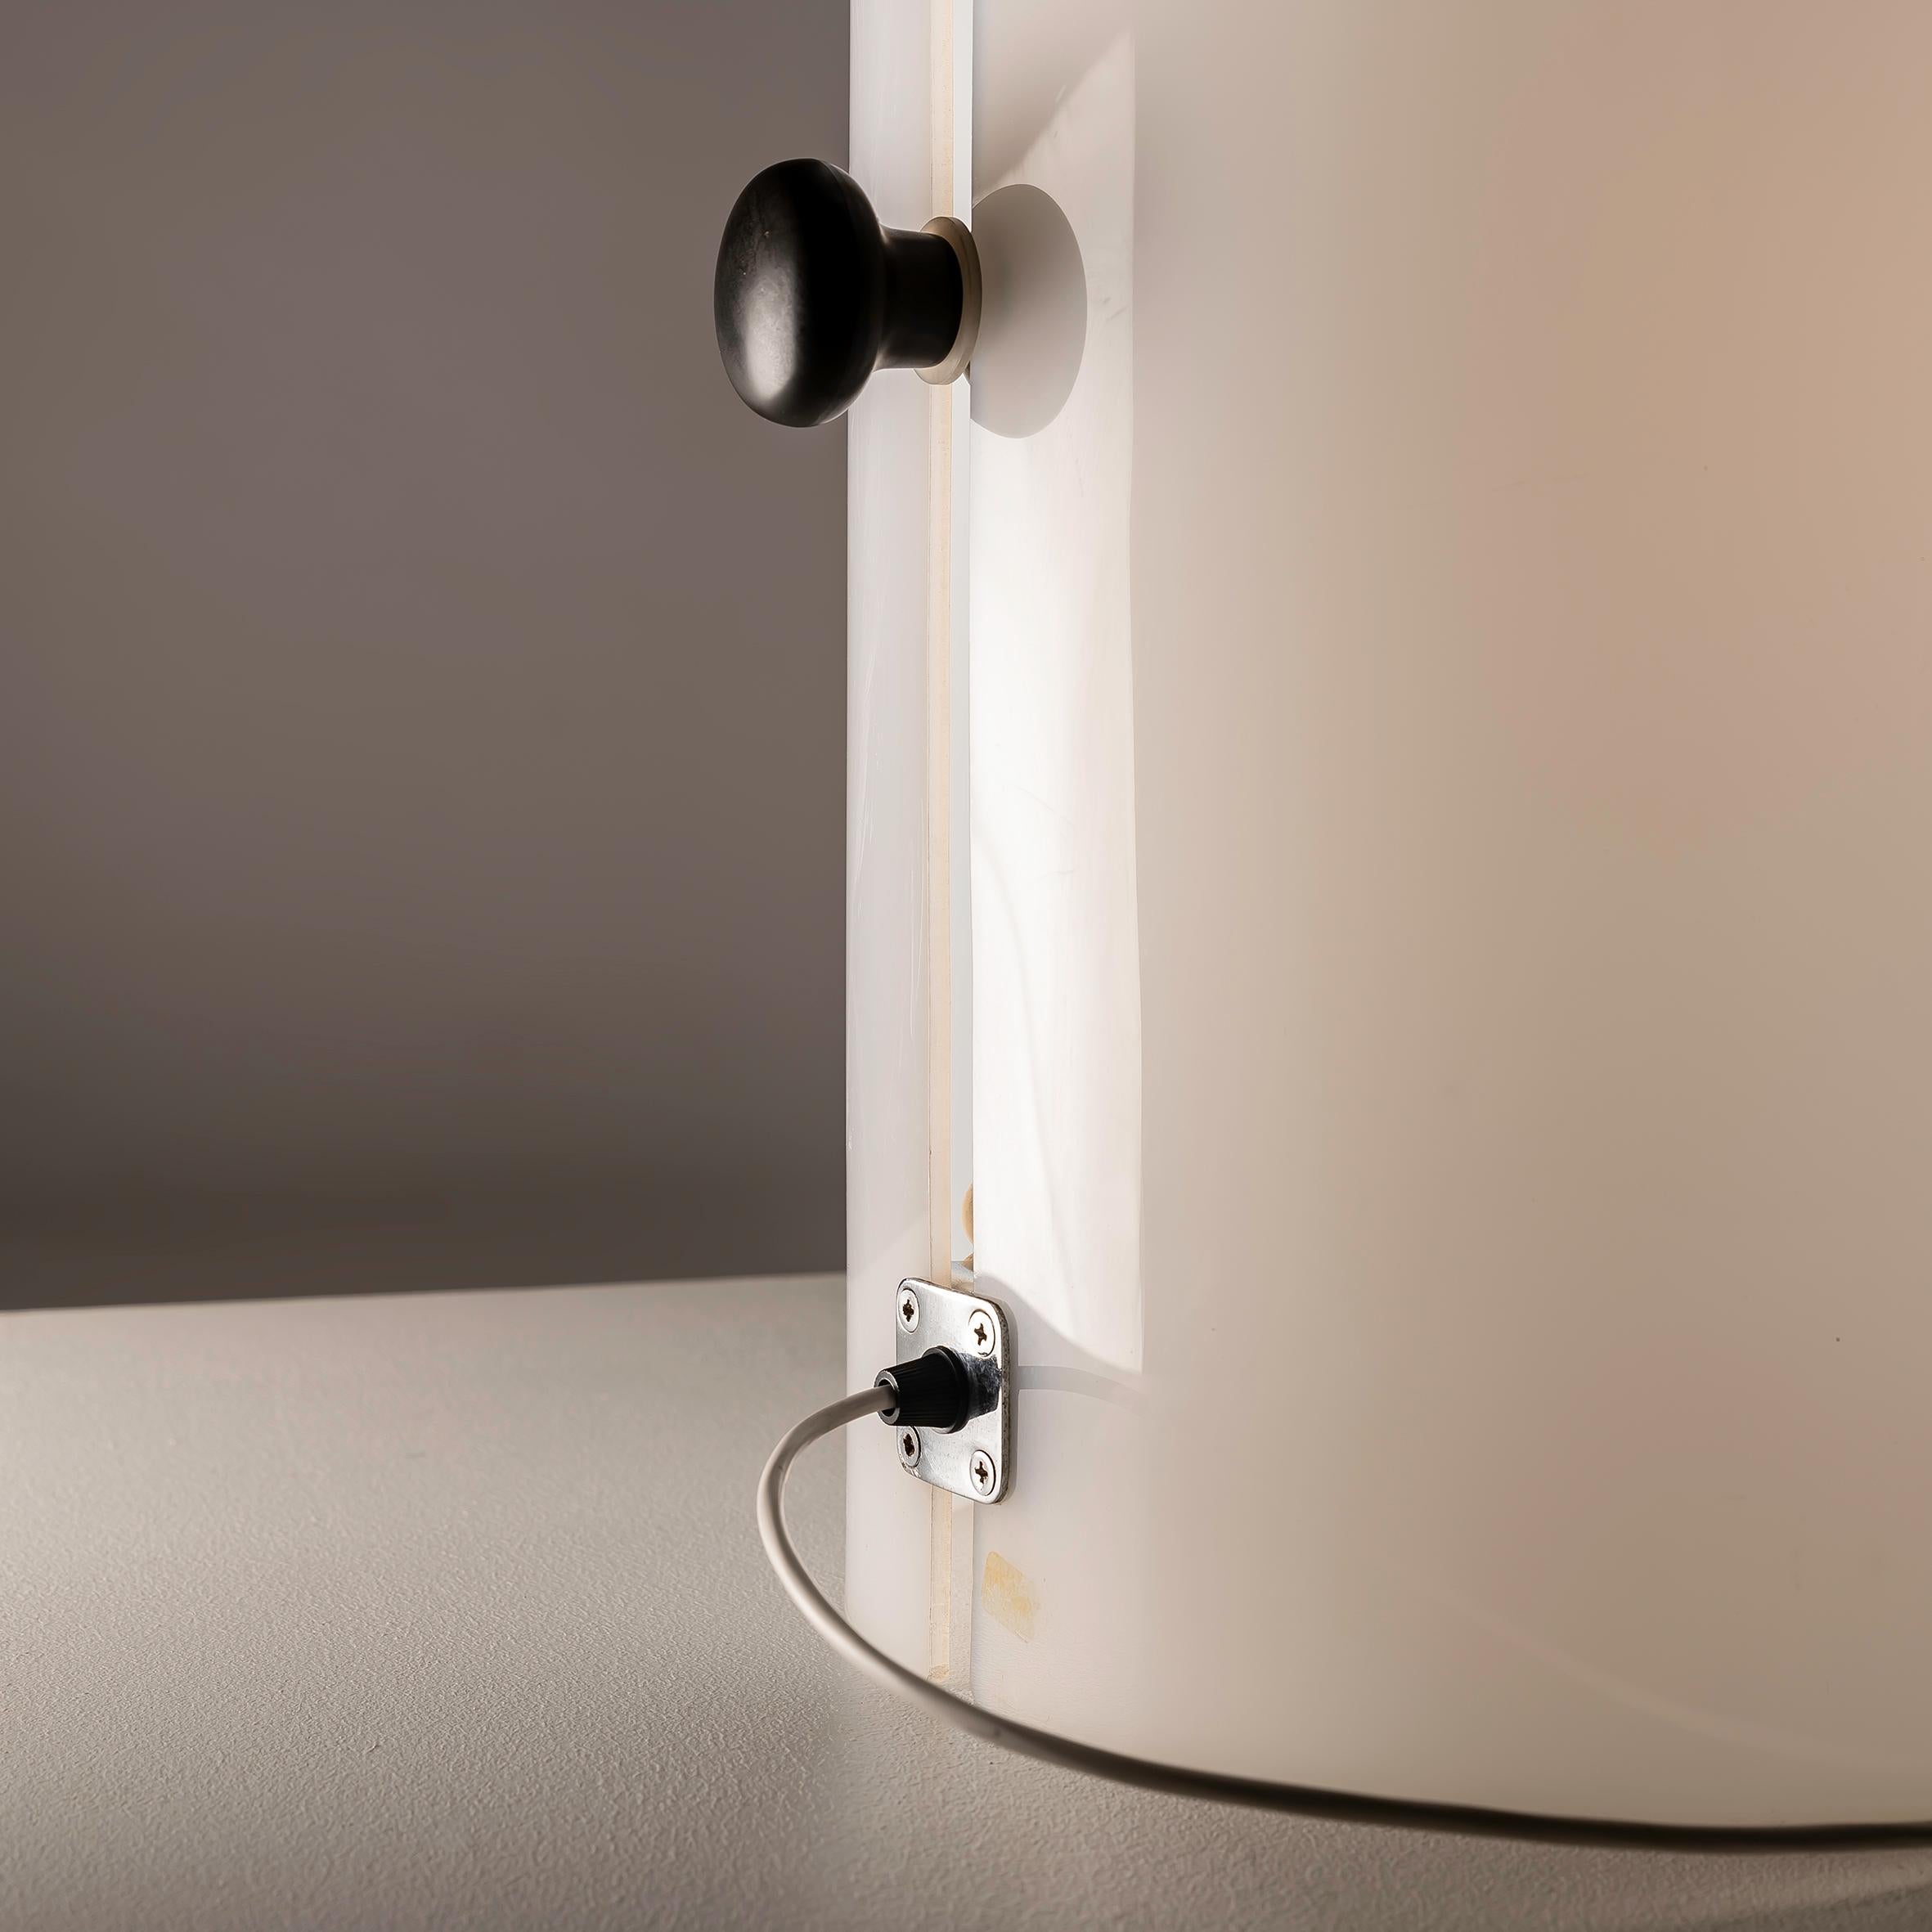 Le grand lampadaire cylindrique de Joan Antoni Blanc pour Tramo, datant des années 1960, est une pièce d'éclairage unique et remarquable. Son caractère unique réside dans son mélange distinctif d'esthétique minimaliste et de fonctionnalité